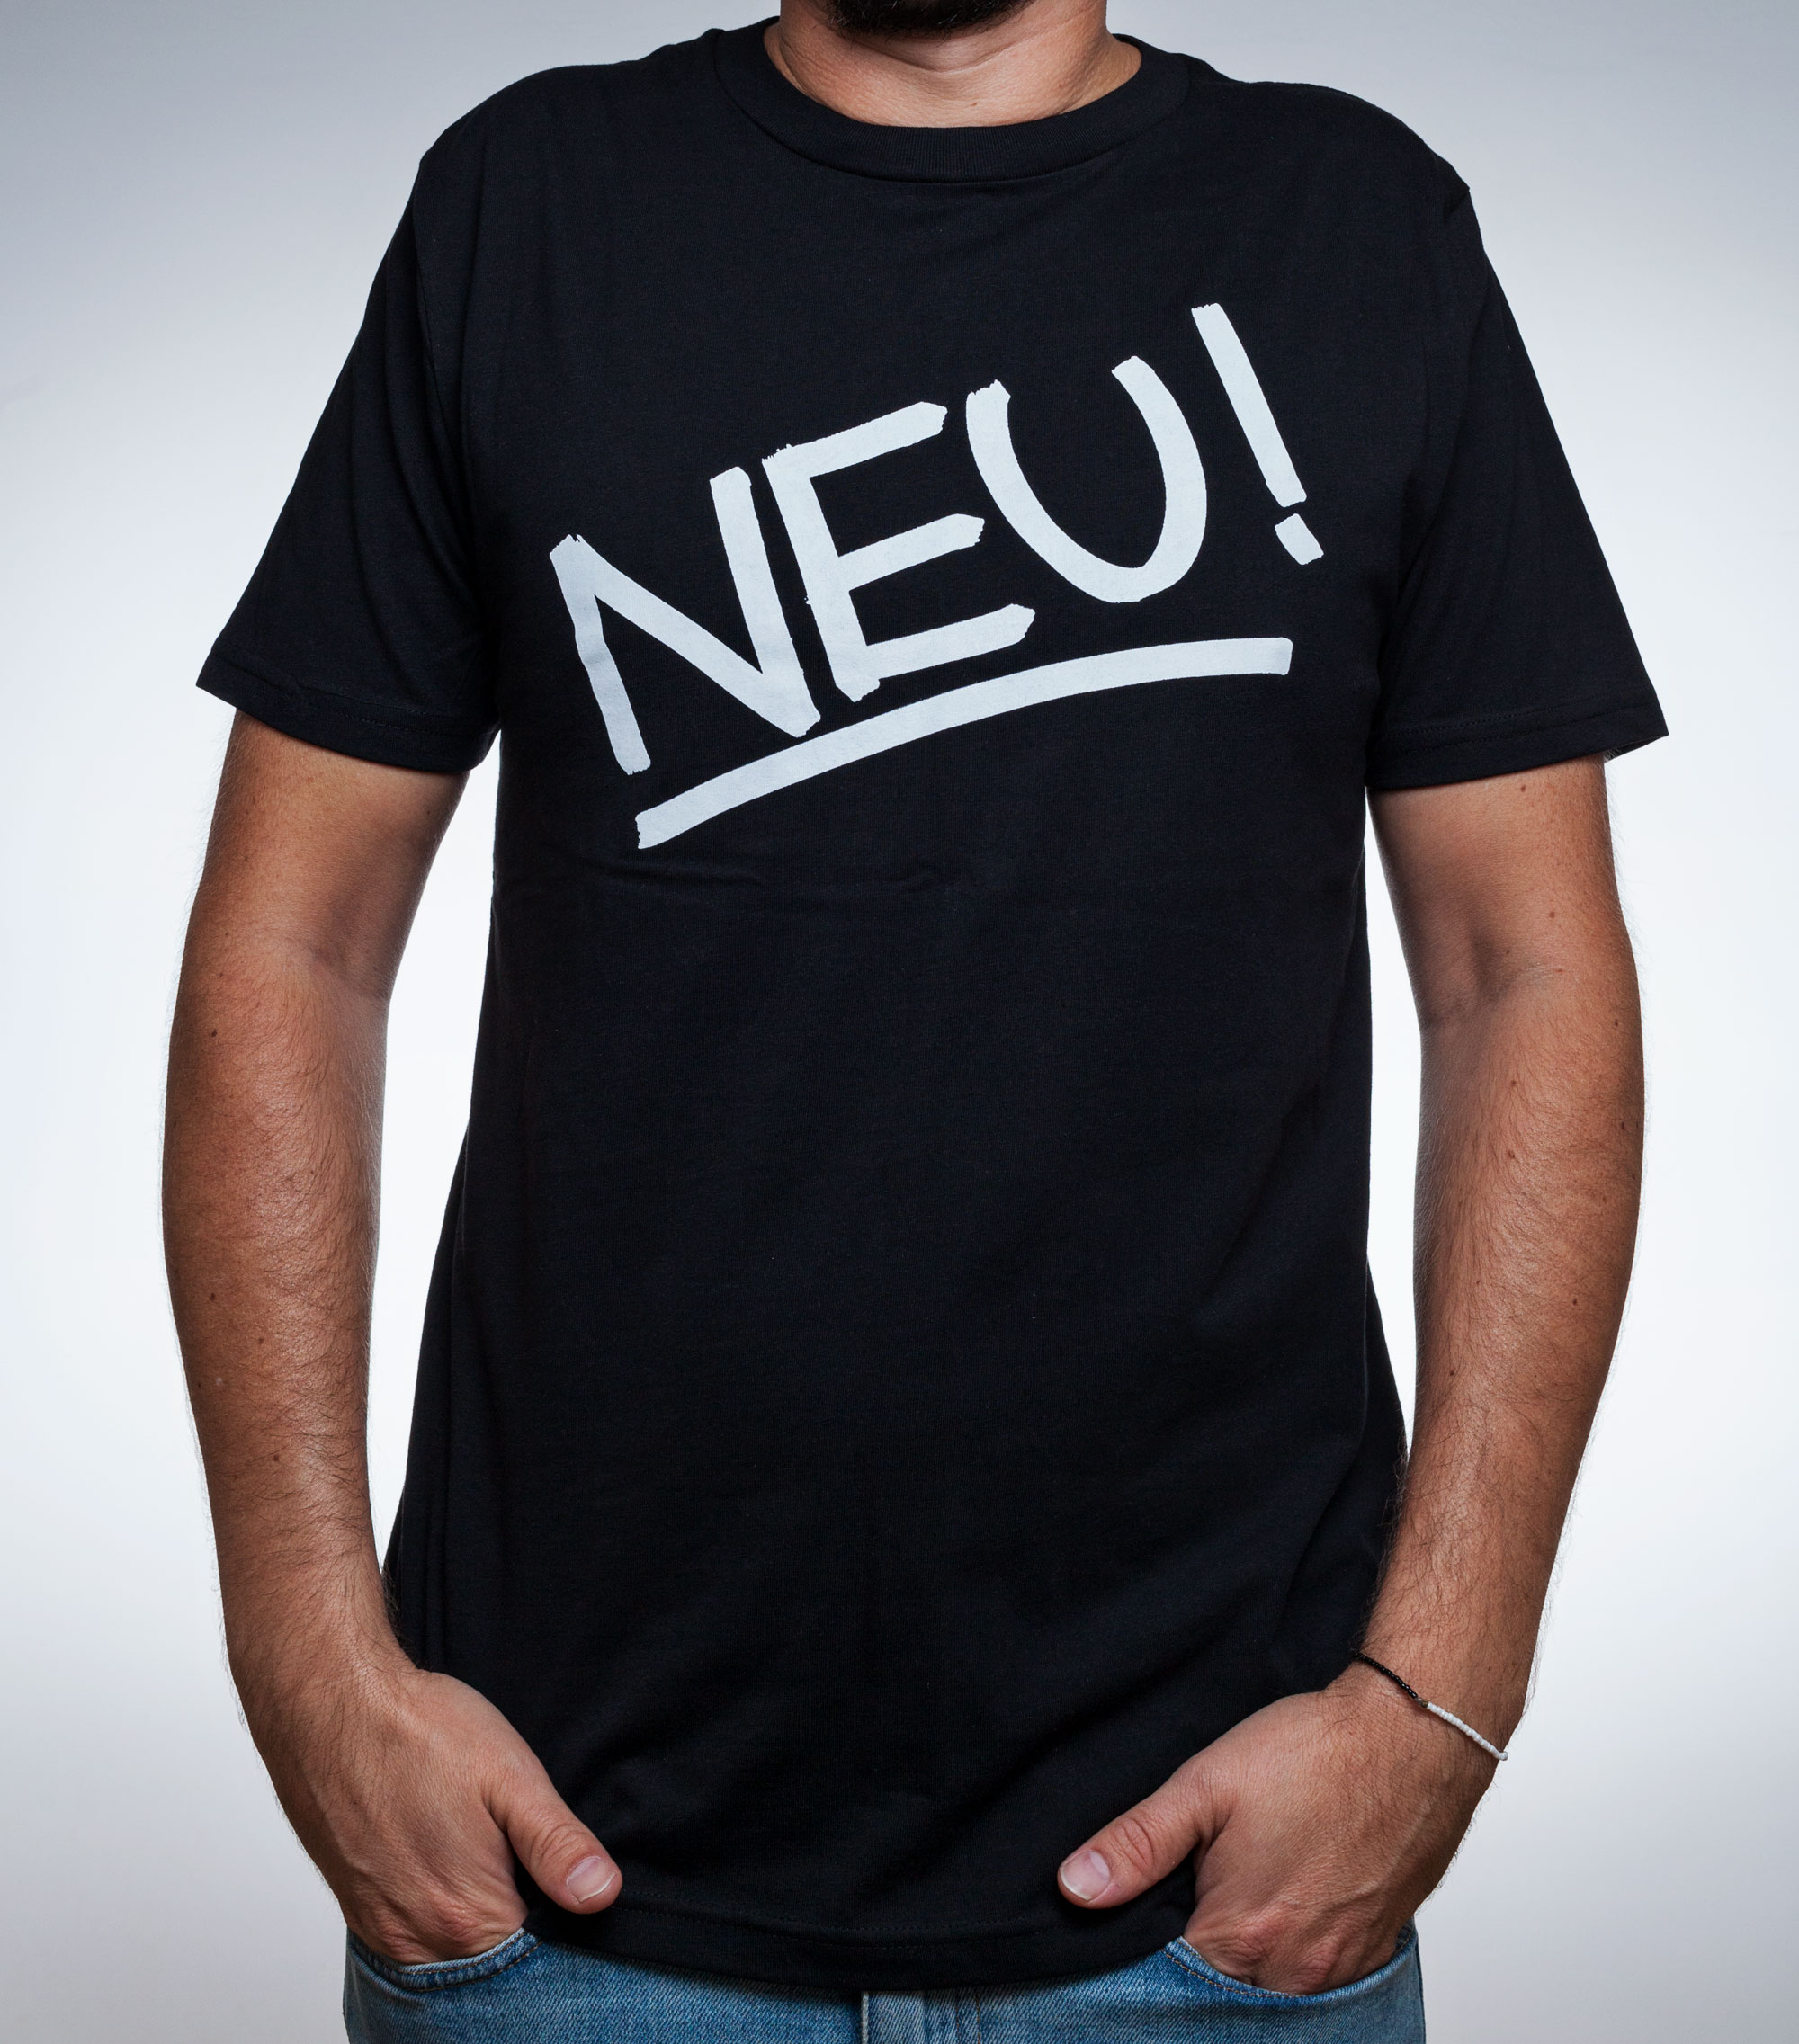 NEU!, NEU! Merch, NEU! Merchandise, T-Shirt, neu band, NEU! Band, Michael Rother, Klaus Dinger, Grönland Records, groenland records, Berlin